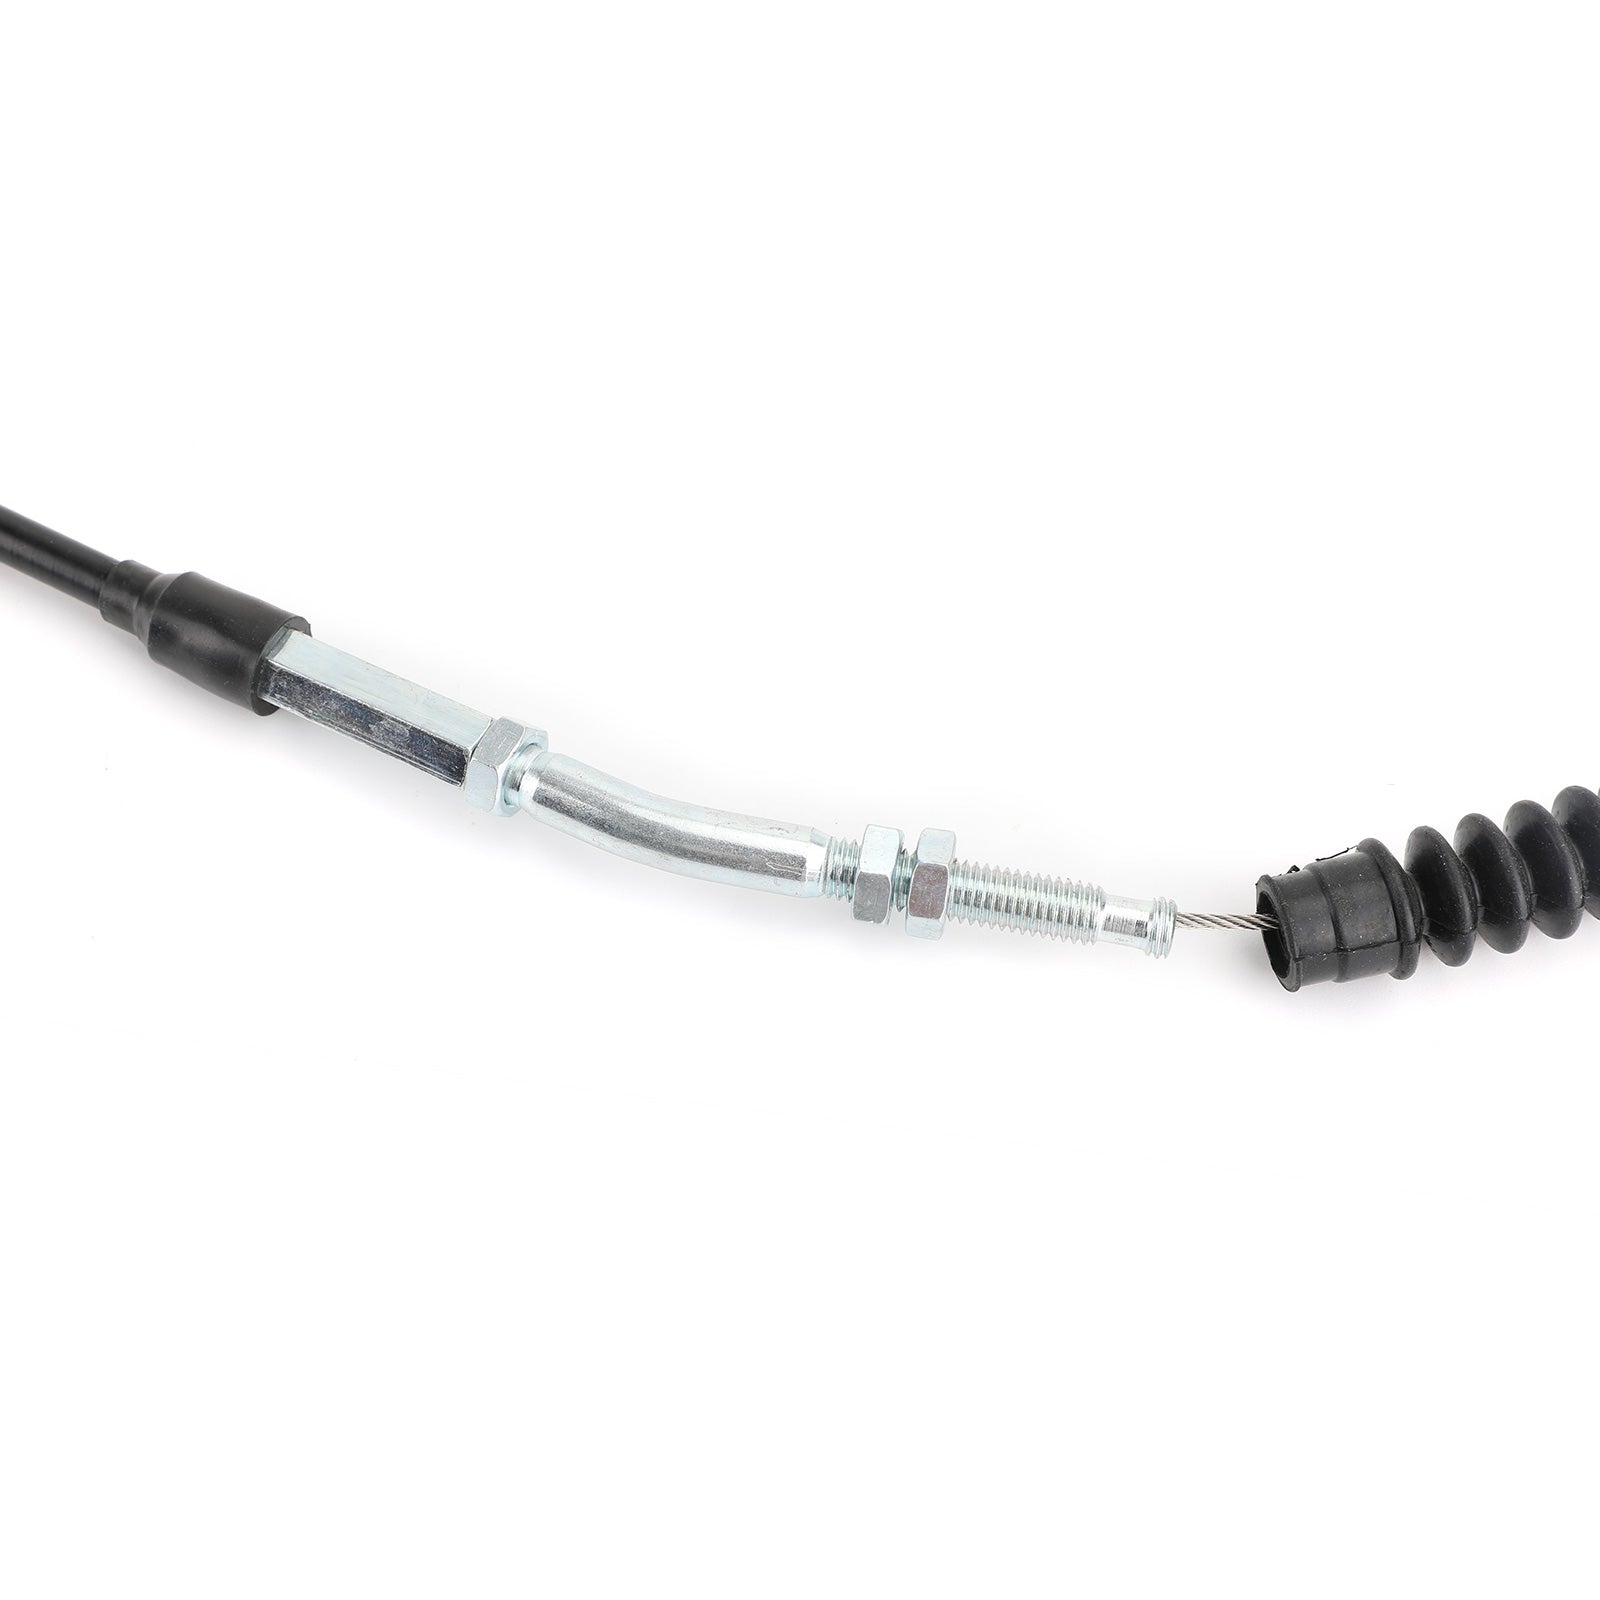 Cable de embrague de motocicleta de alambre de acero 58200-48HC0 para Suzuki GW250 Inazuma 2014-17 genérico